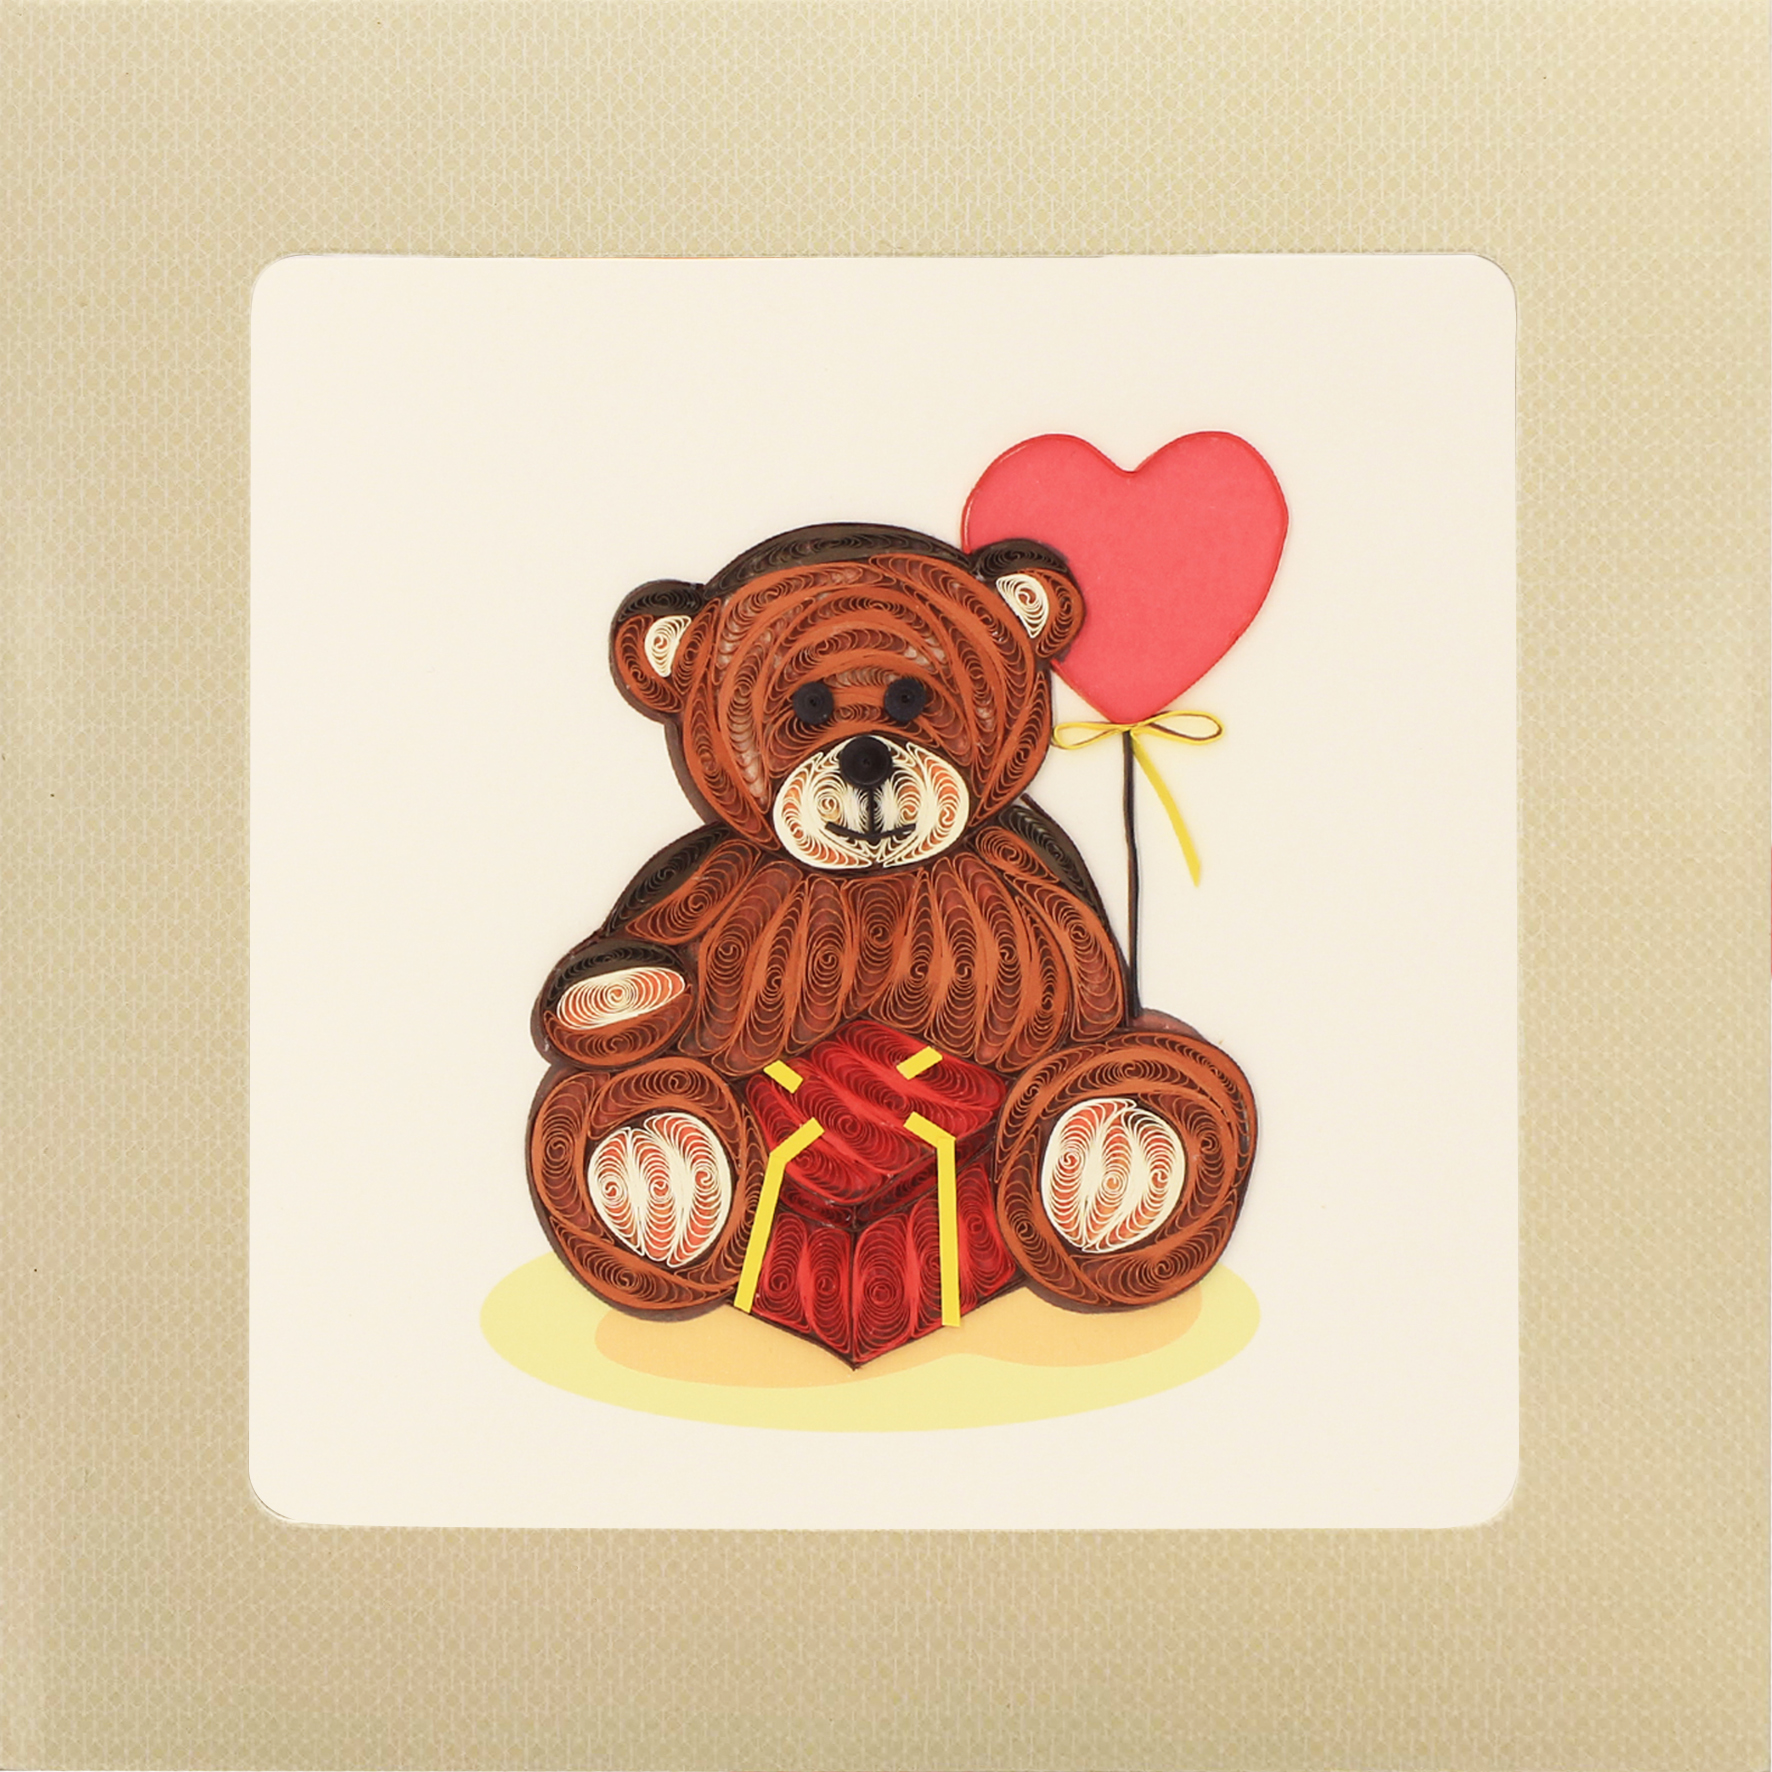 Thiệp Handmade - Thiệp Gấu tình yêu nghệ thuật giấy xoắn (Quilling Card) - Tặng Kèm Khung Giấy Để Bàn - Thiệp chúc mừng sinh nhật, kỷ niệm, tình yêu, cảm ơn...